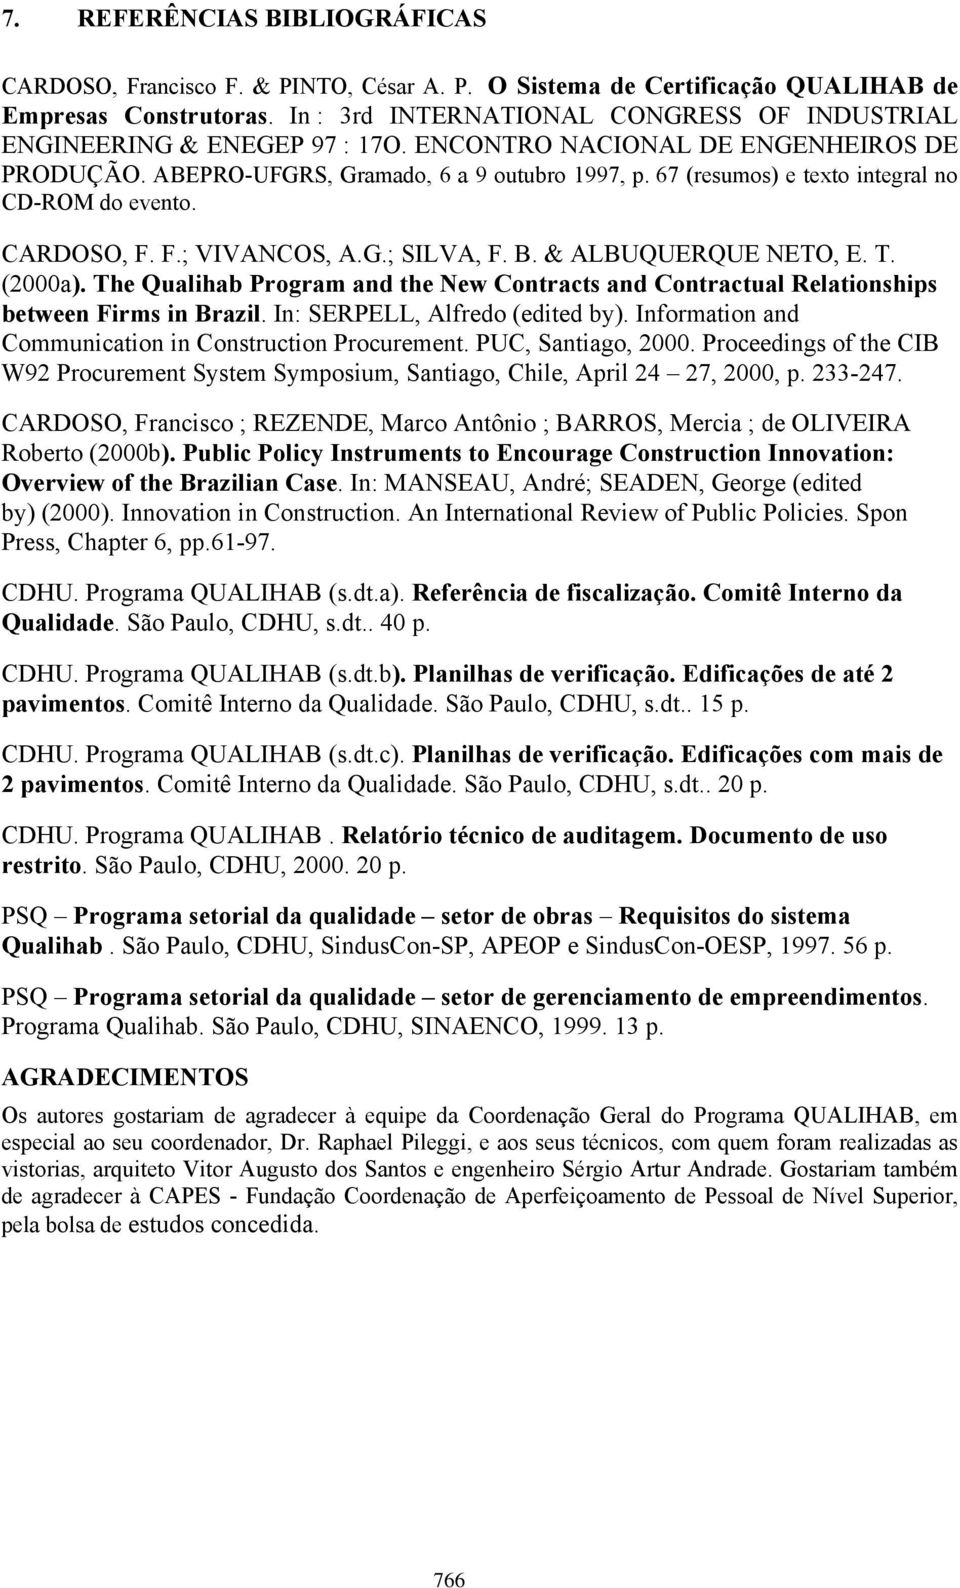 67 (resumos) e texto integral no CD-ROM do evento. CARDOSO, F. F.; VIVANCOS, A.G.; SILVA, F. B. & ALBUQUERQUE NETO, E. T. (2000a).